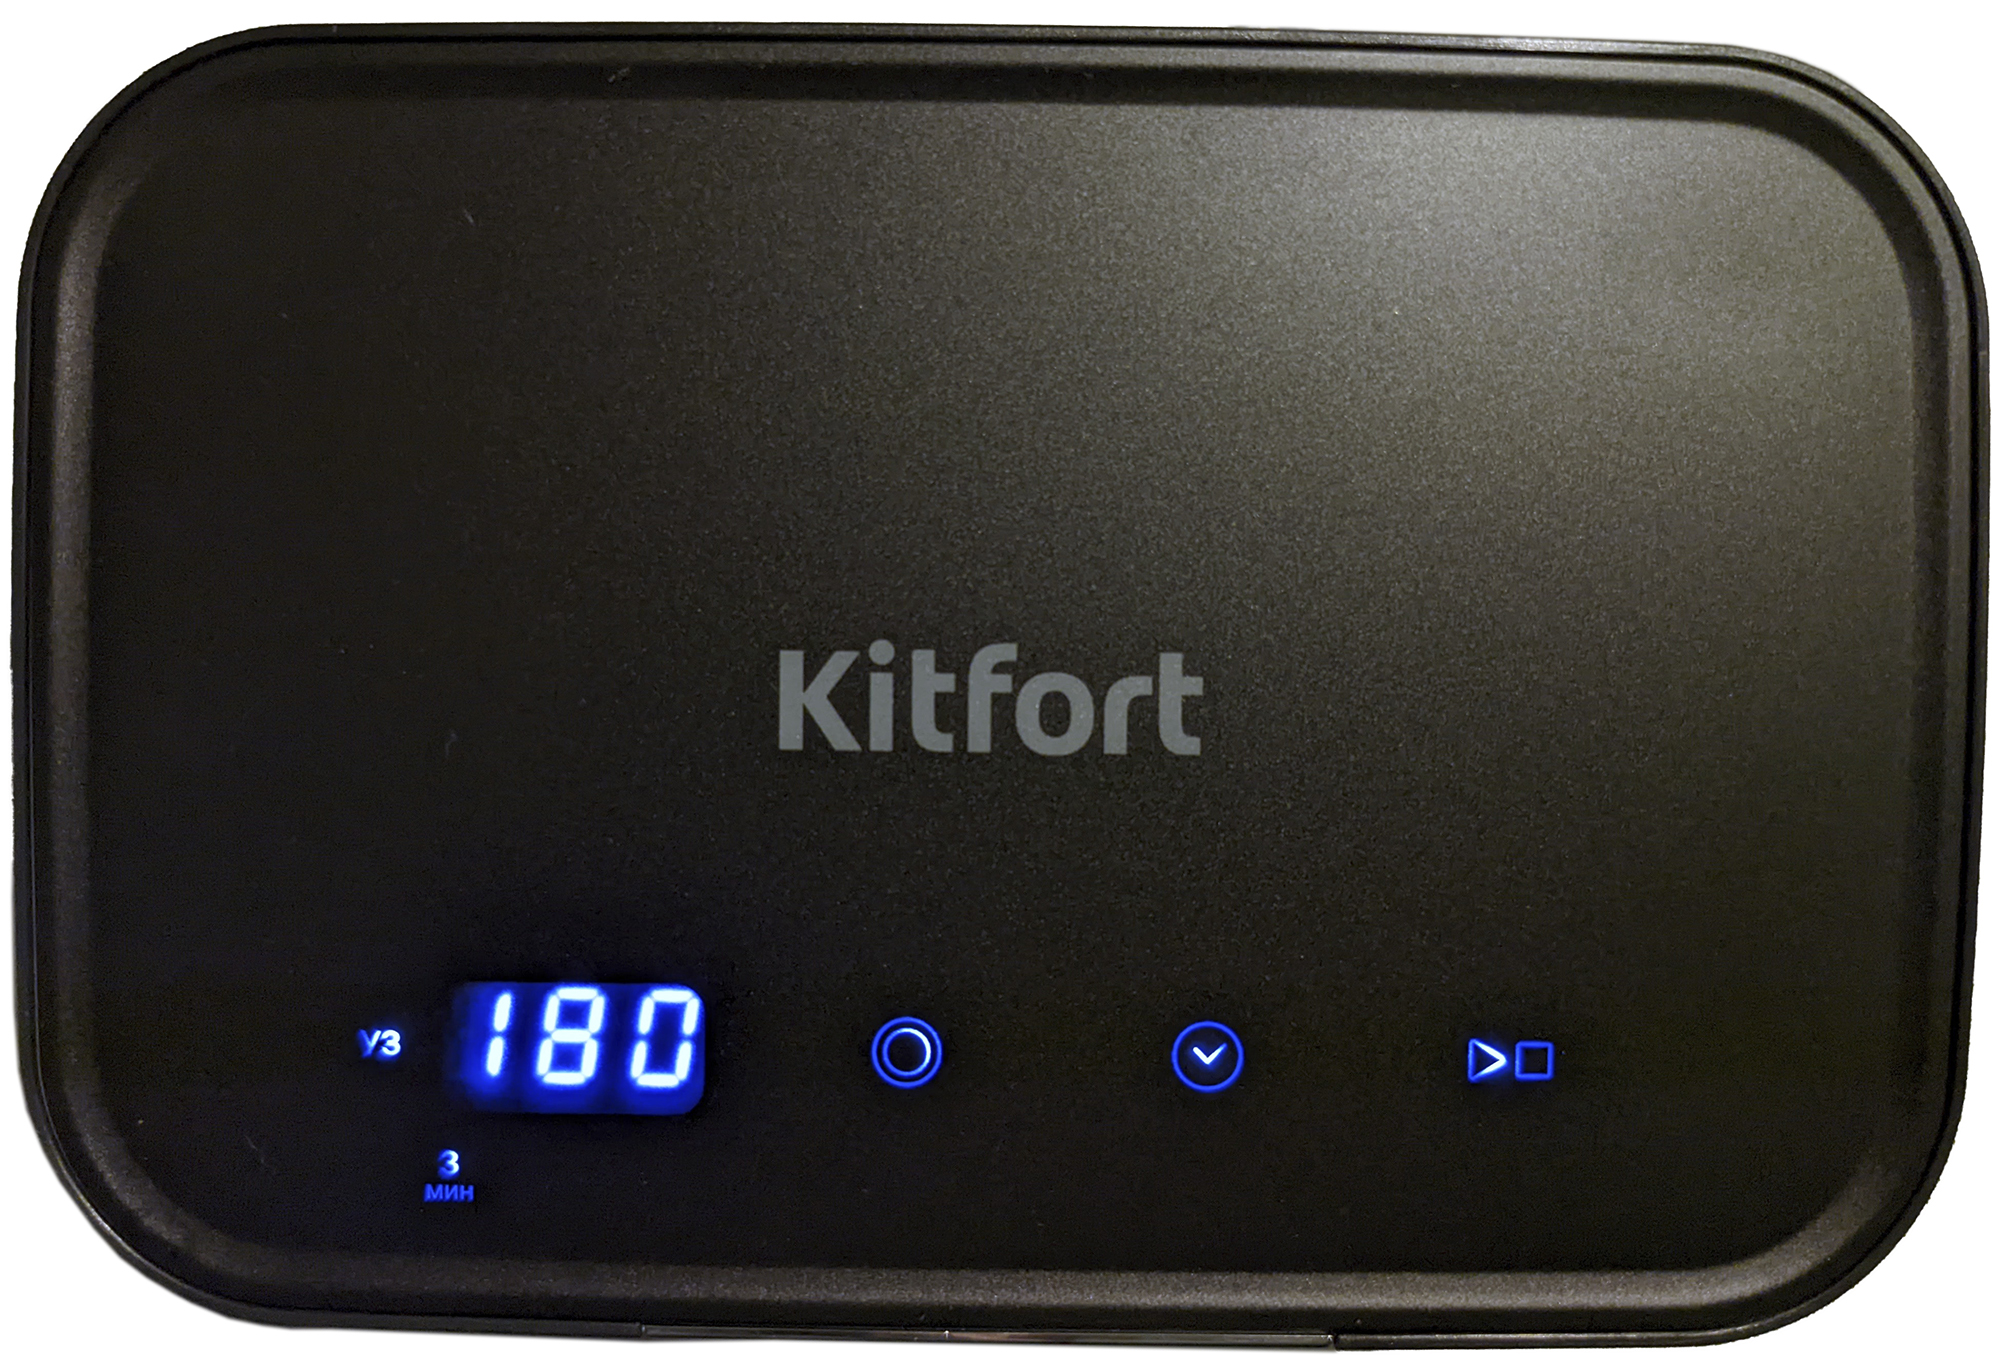 Ультразвуковая мойка kitfort. KT-2072 Kitfort. Уз мойка Kitfort KT-2071. Kitfort сенсорные кнопки. Ультразвуковая мойка Kitfort KT-2072 (2 В 1).